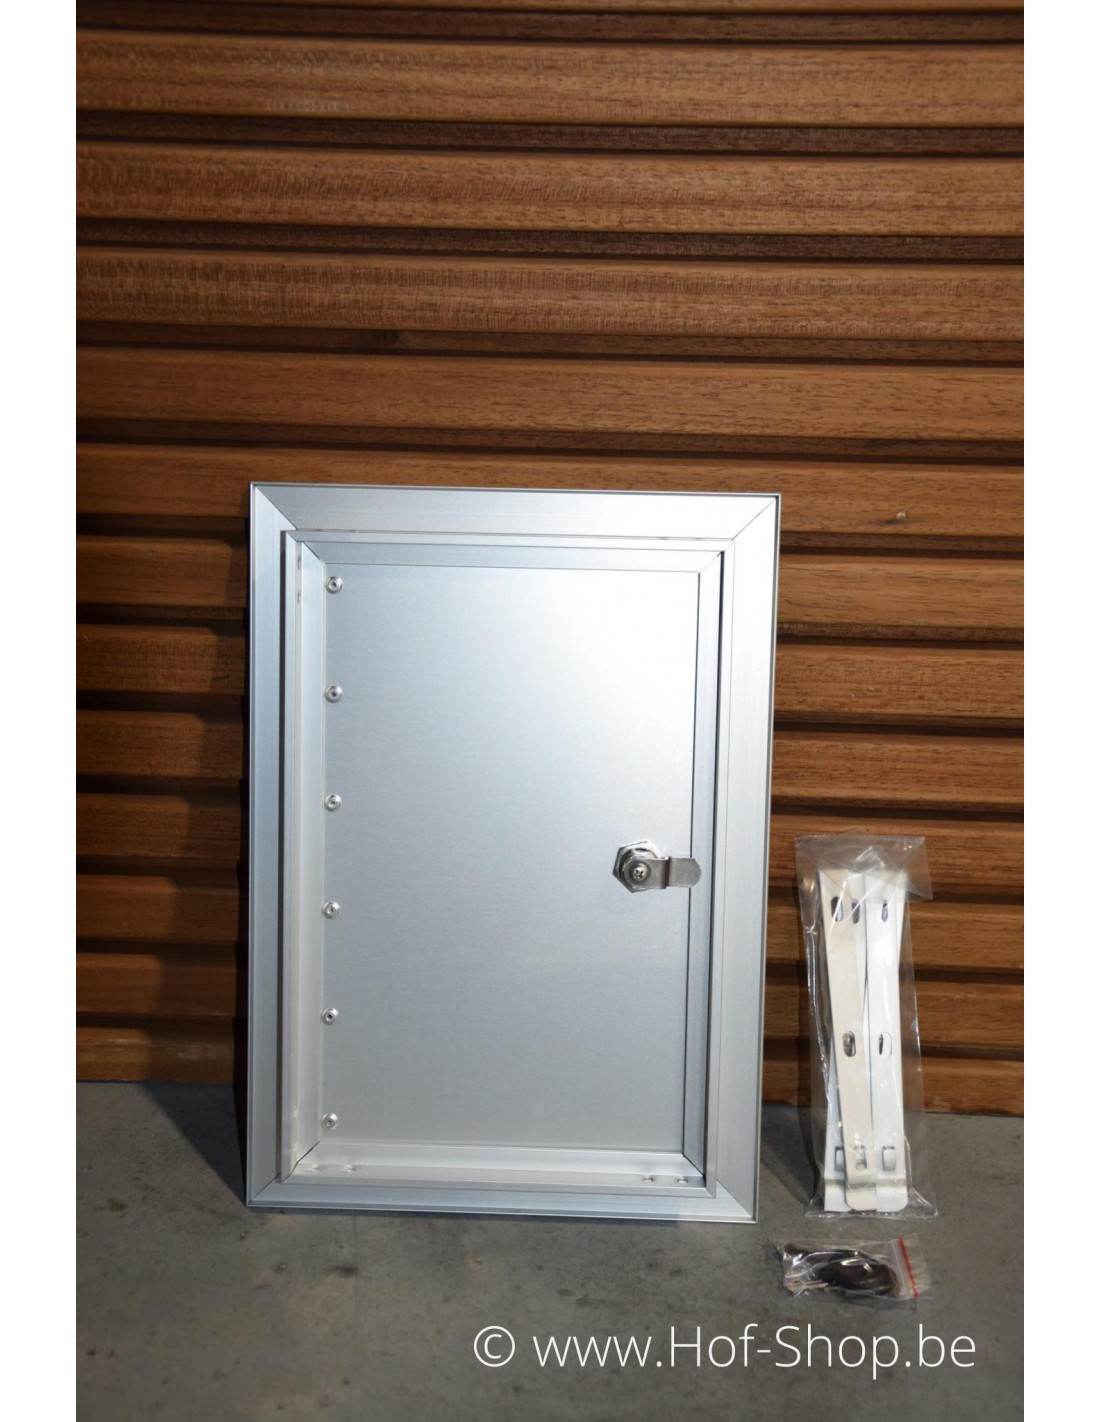 gek solo Installatie Brievenbusdeur 24 x 34 cm Small - VASP brievenkastdeur aluminium